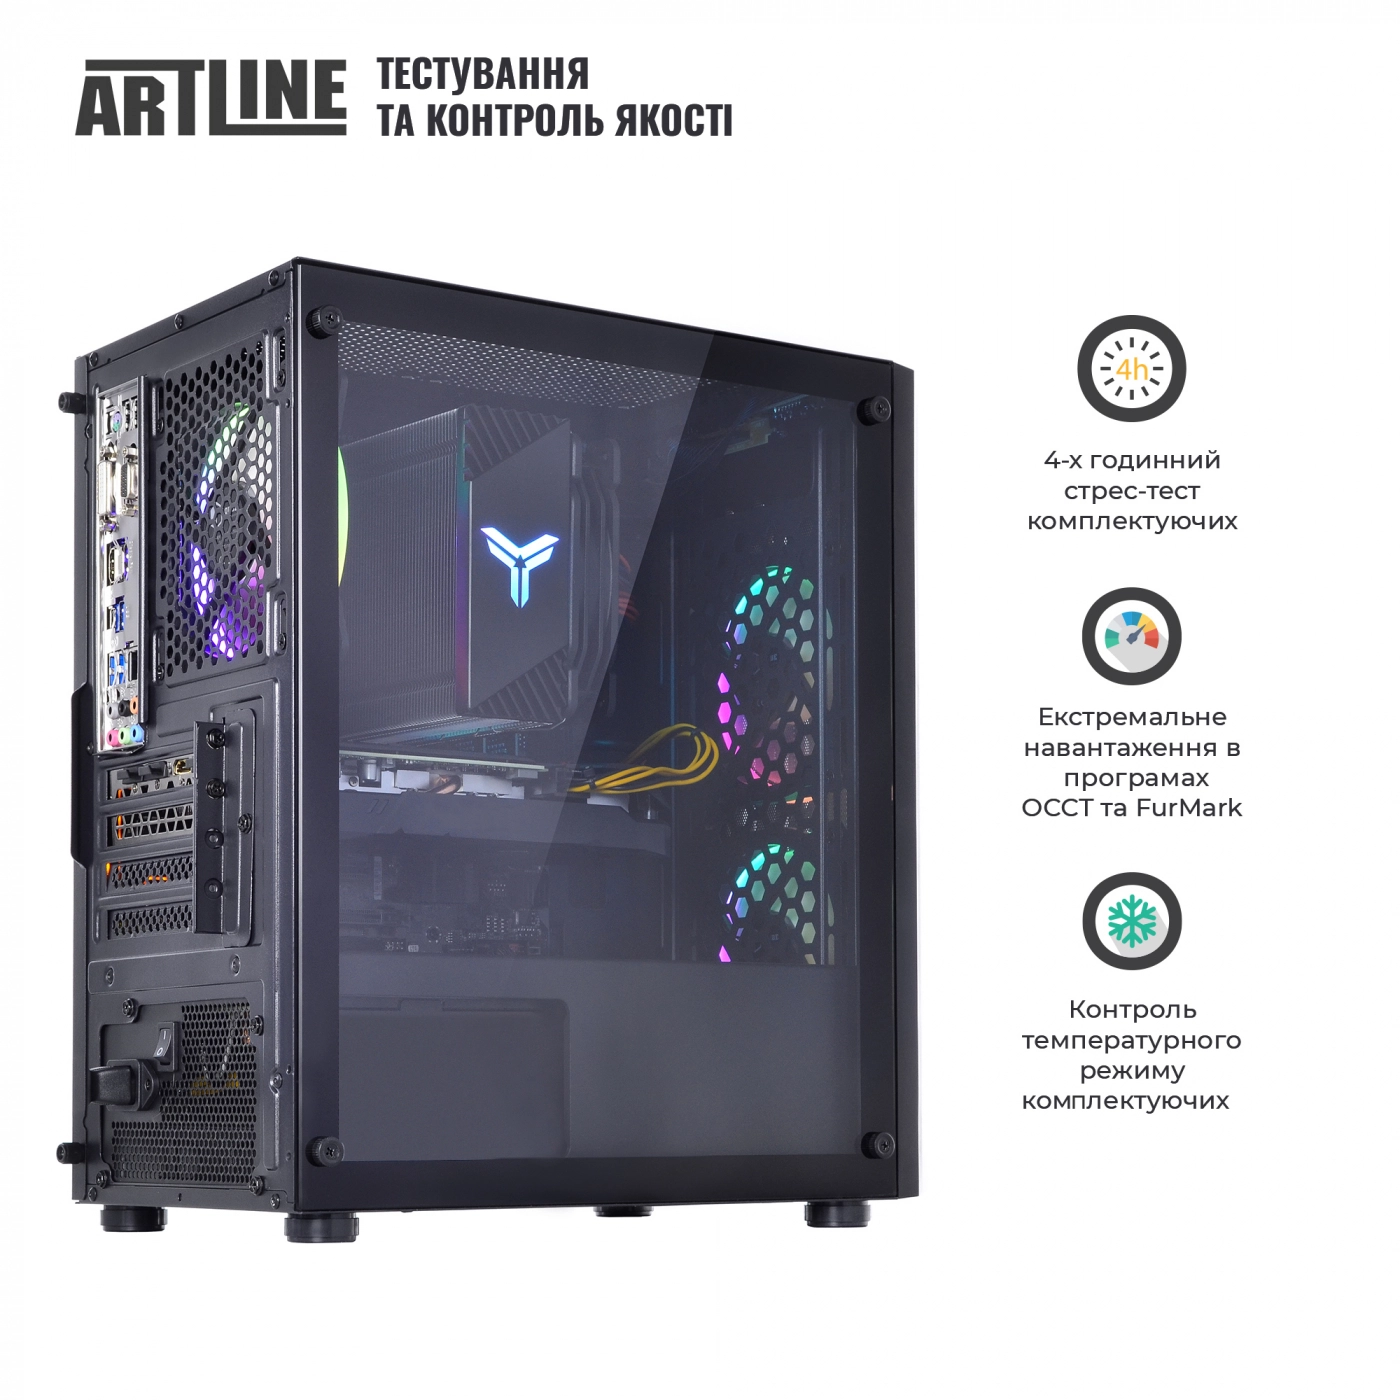 Купить Компьютер ARTLINE Gaming X71v45 - фото 9